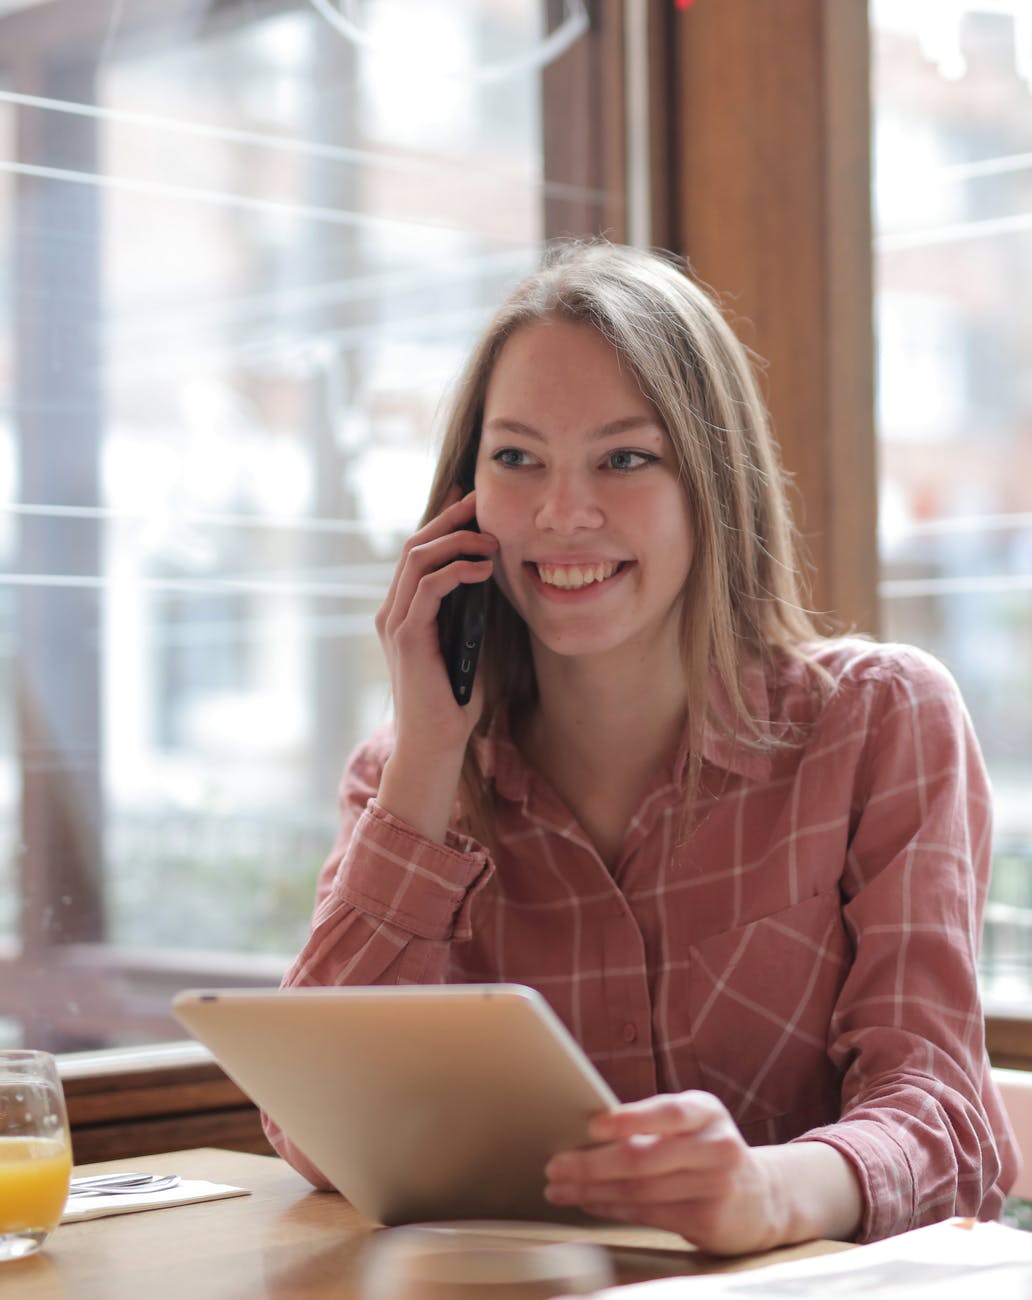 En la imagen, una mujer sonriente situada en una cafetería, porta en una mano una tablet, y con la otra está realizando una llamada de teléfono a FUNTESO, Fundación Tecnología Social, 